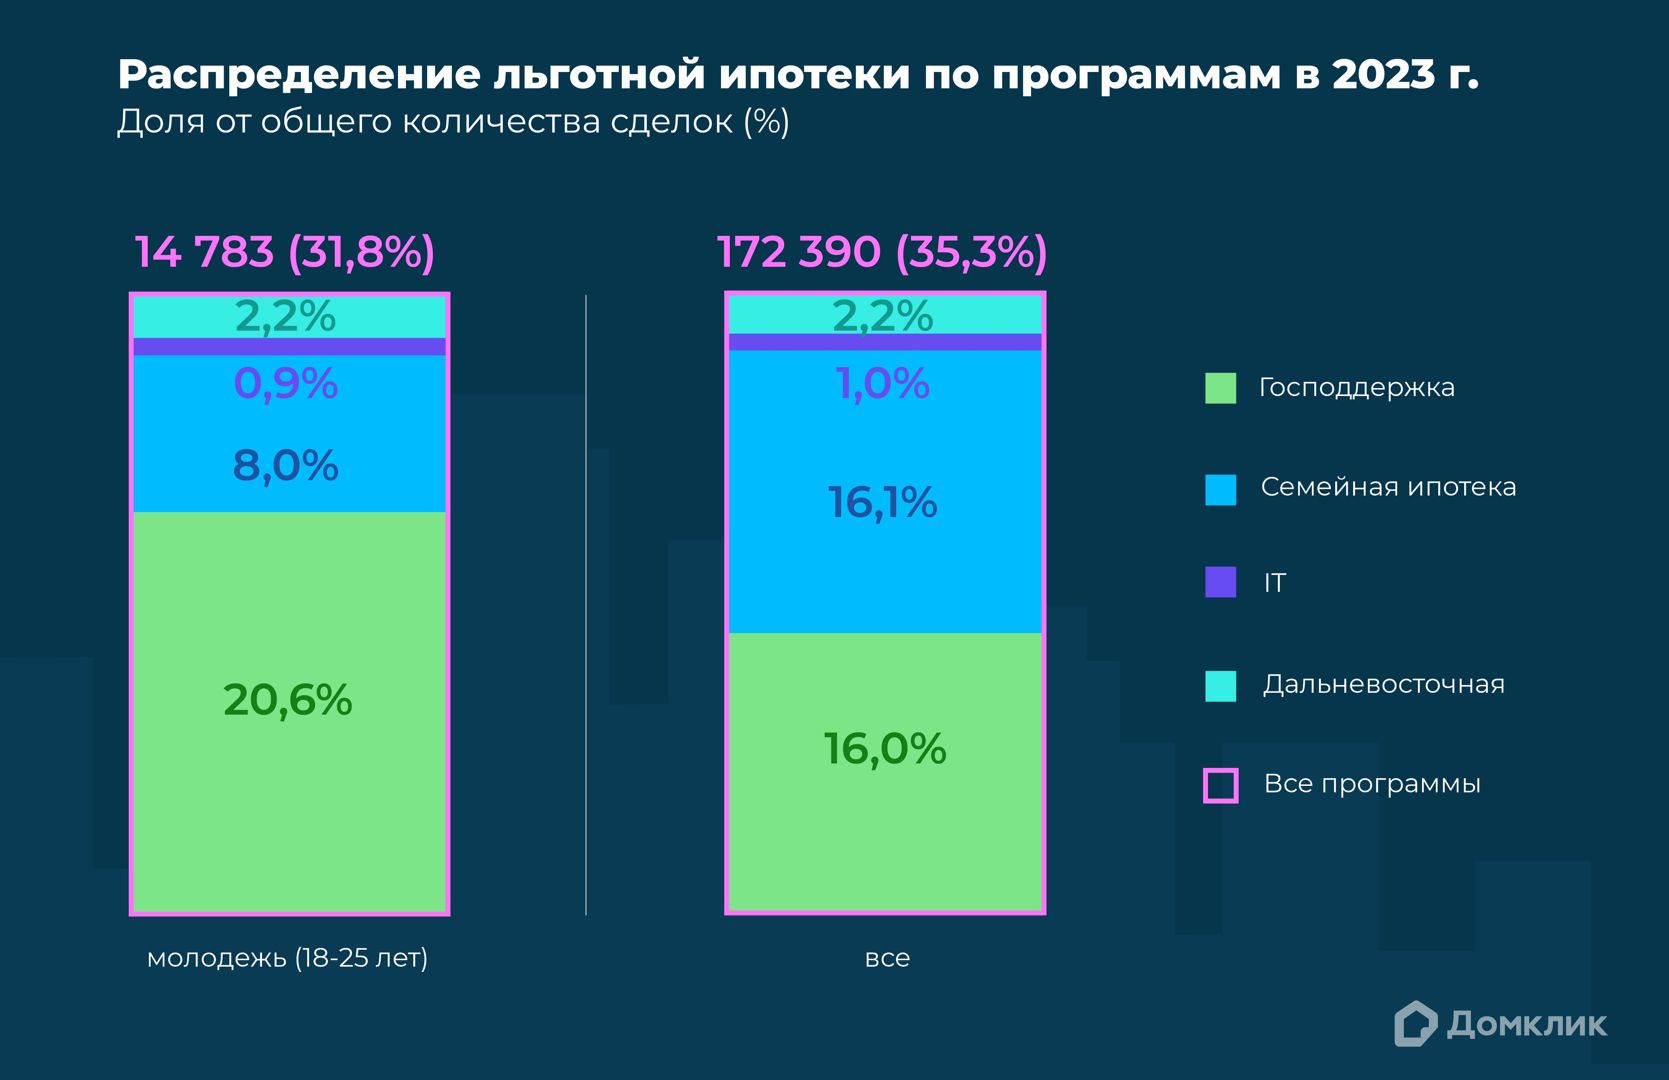 Количественное соотношение выданных кредитов по льготным ипотечным программам среди молодежи (18-25 лет) и всего российского населения в 2023 году.